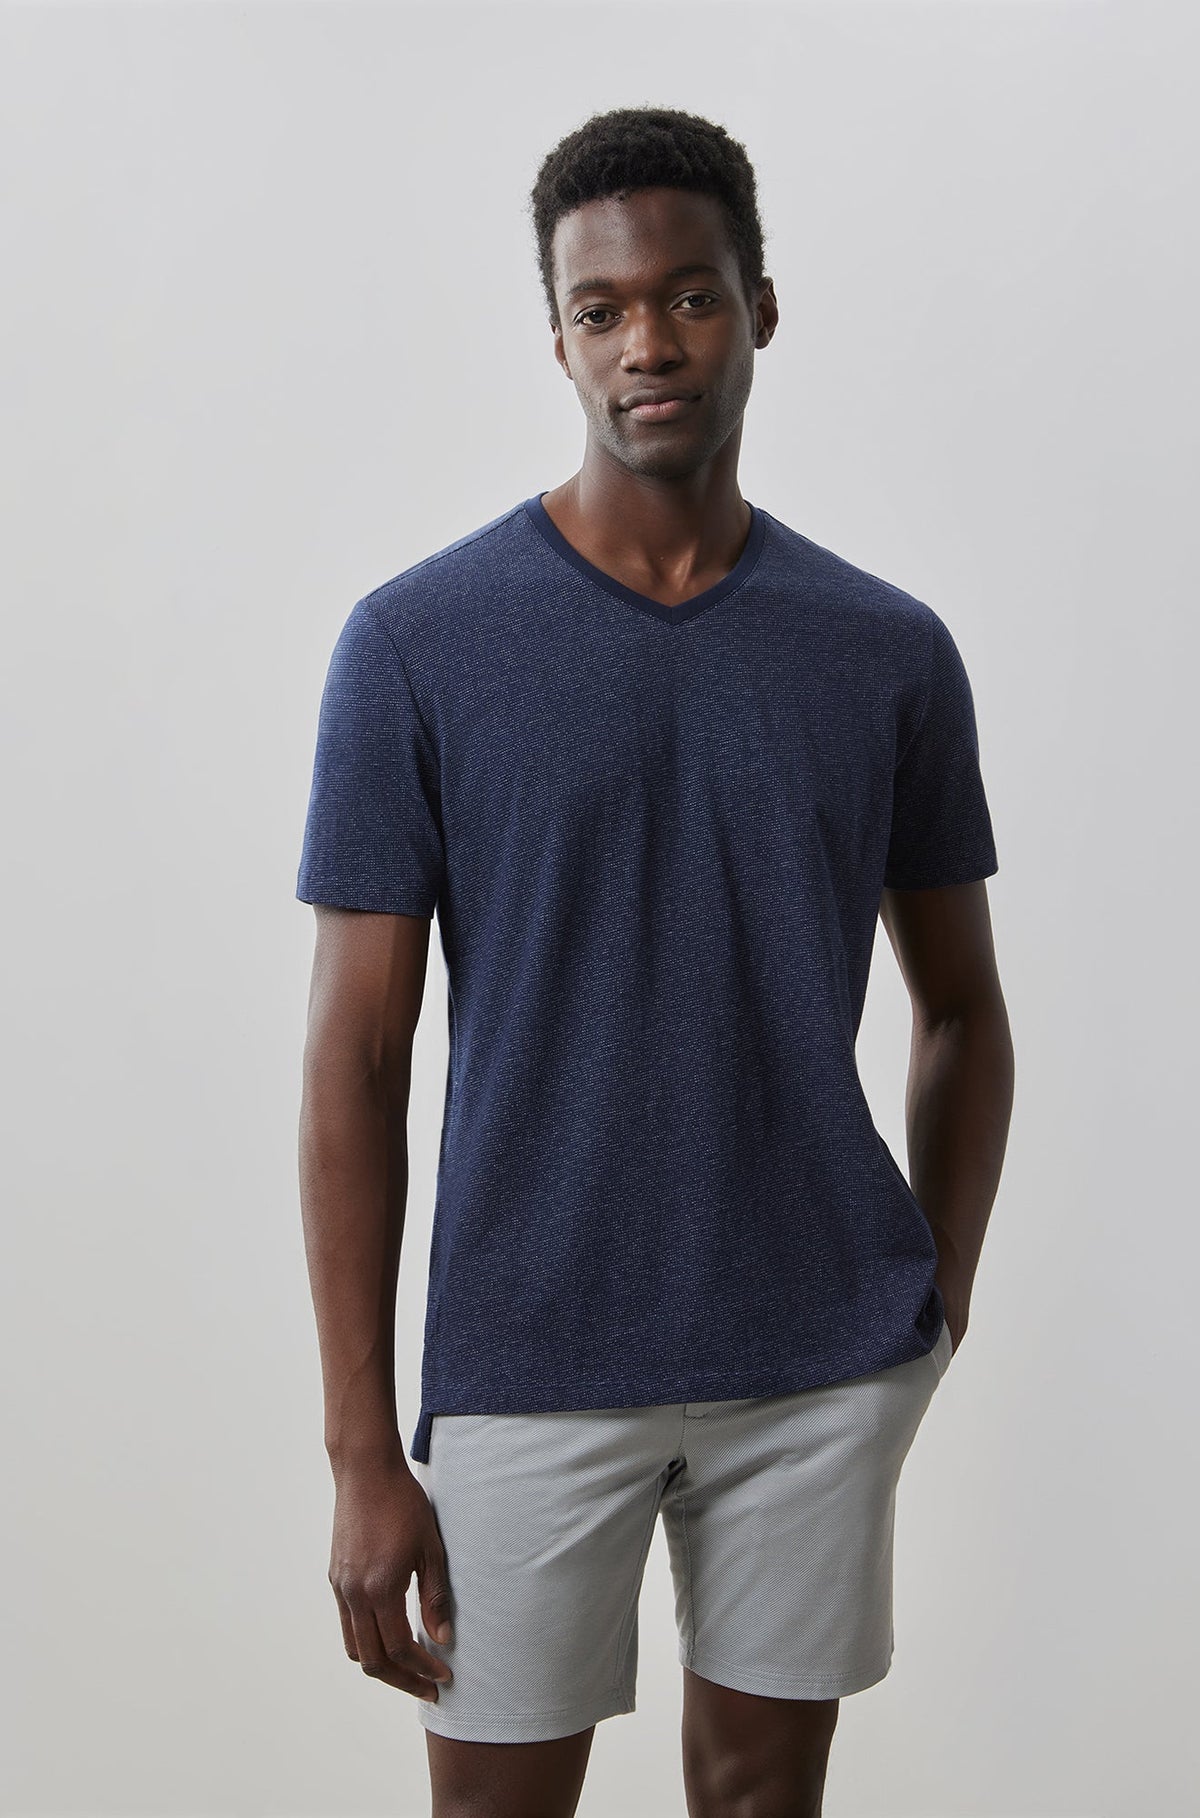 T-Shirt V-neck pour homme par Robert Barakett | Thoreau RB41135 NAVY | Machemise.ca, vêtements mode pour hommes